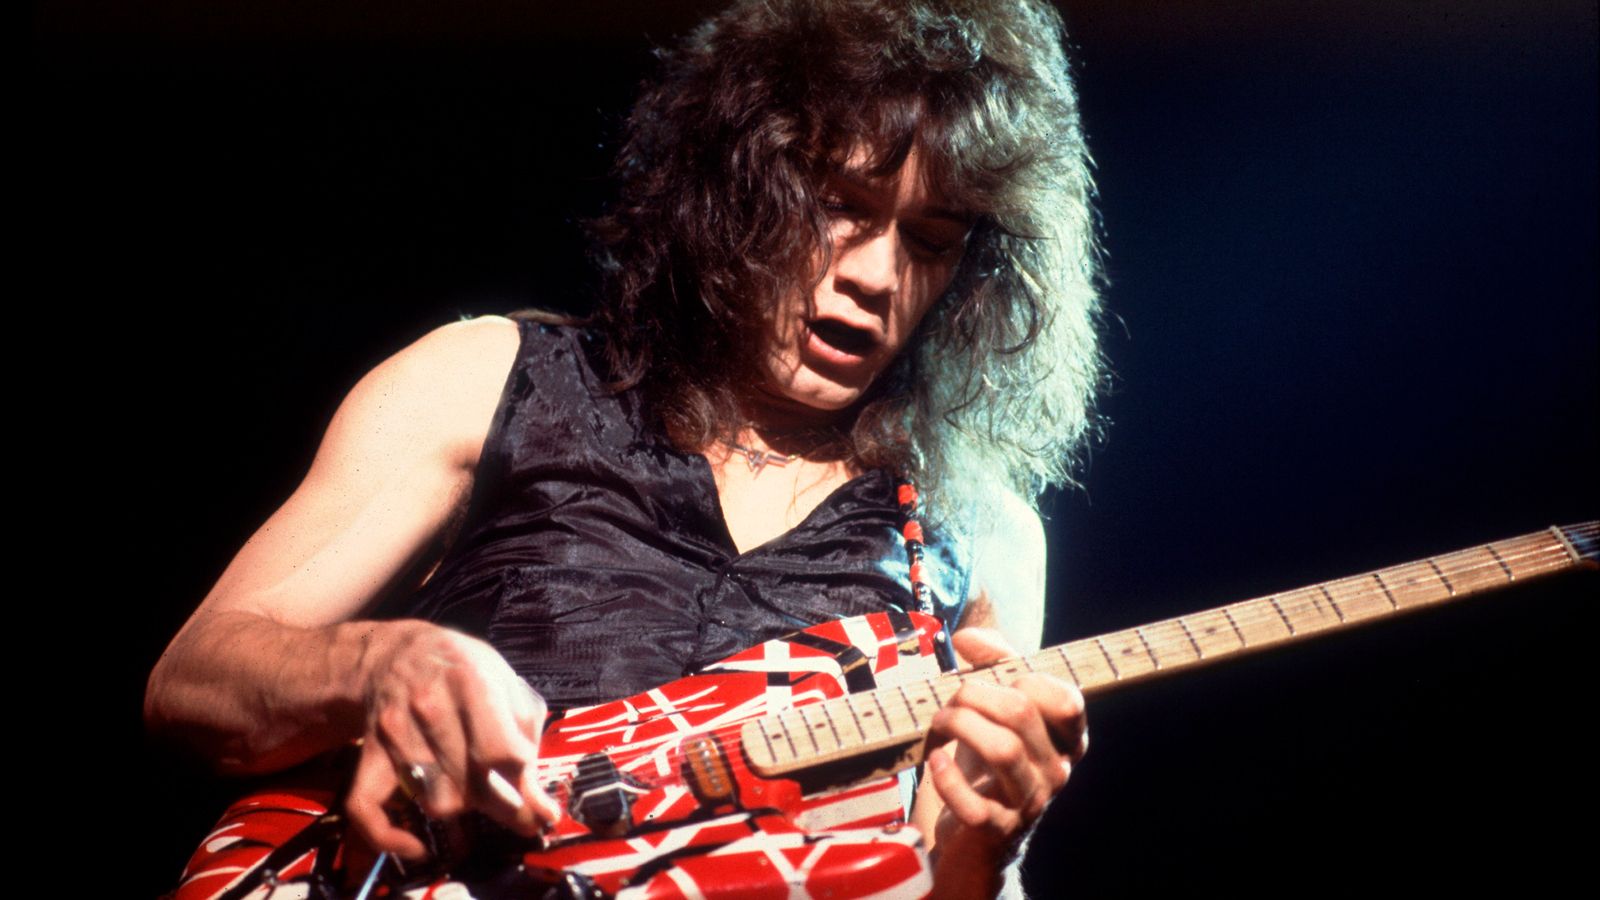 Eddie Van Halen, All Time Great Guitar Hero, Dead At 65